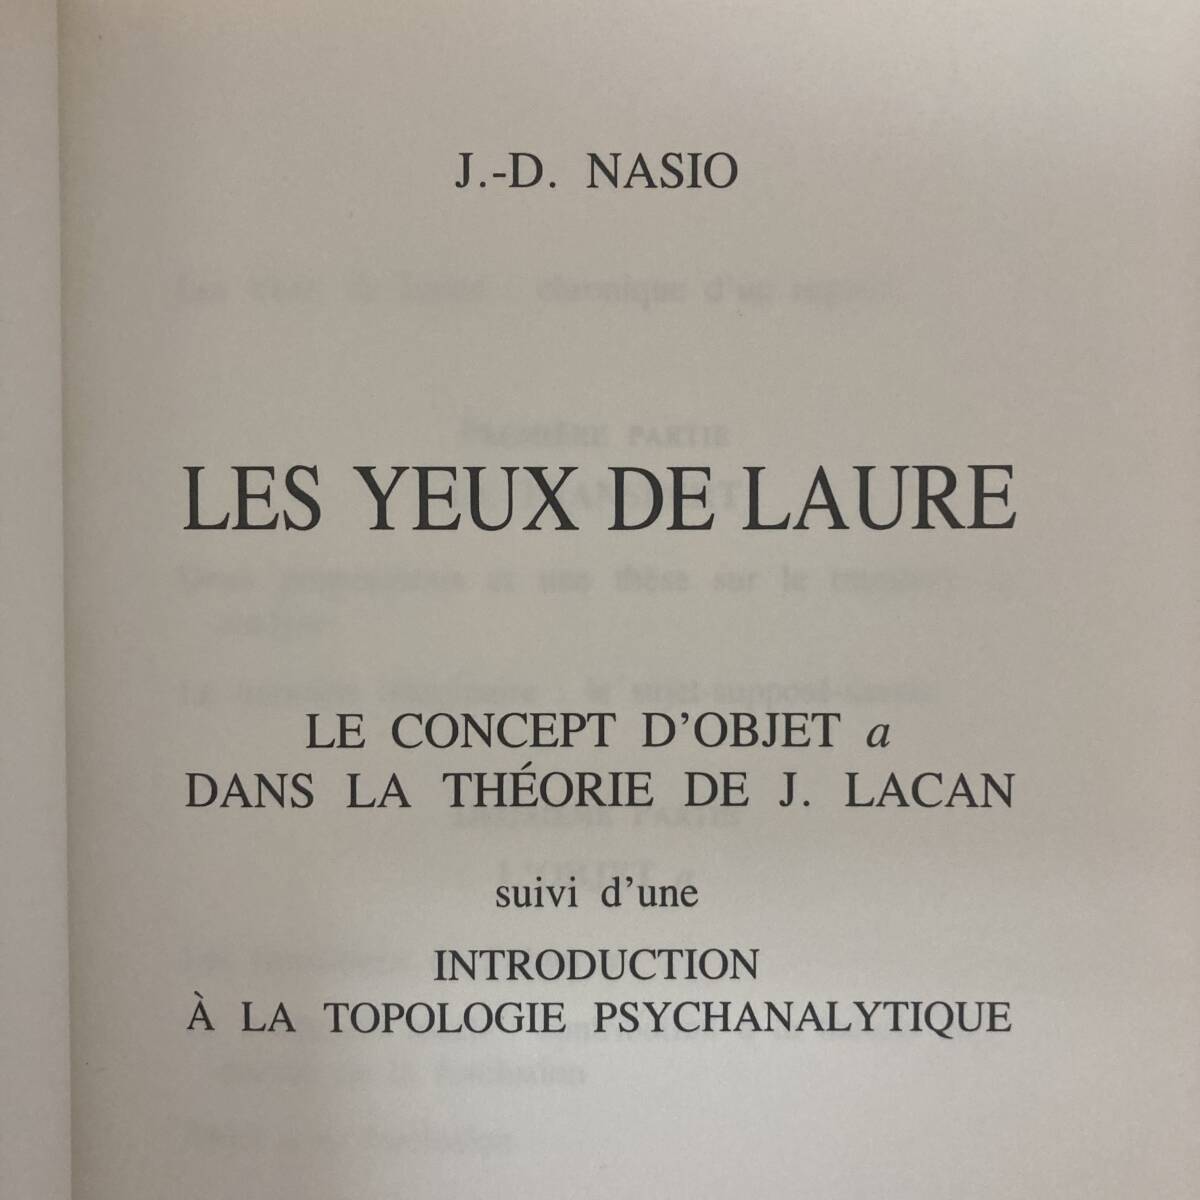 【仏語洋書】LES YEUX DE LAURE / J.-D.Nasio（著）【精神分析 ジャック・ラカン】_画像3